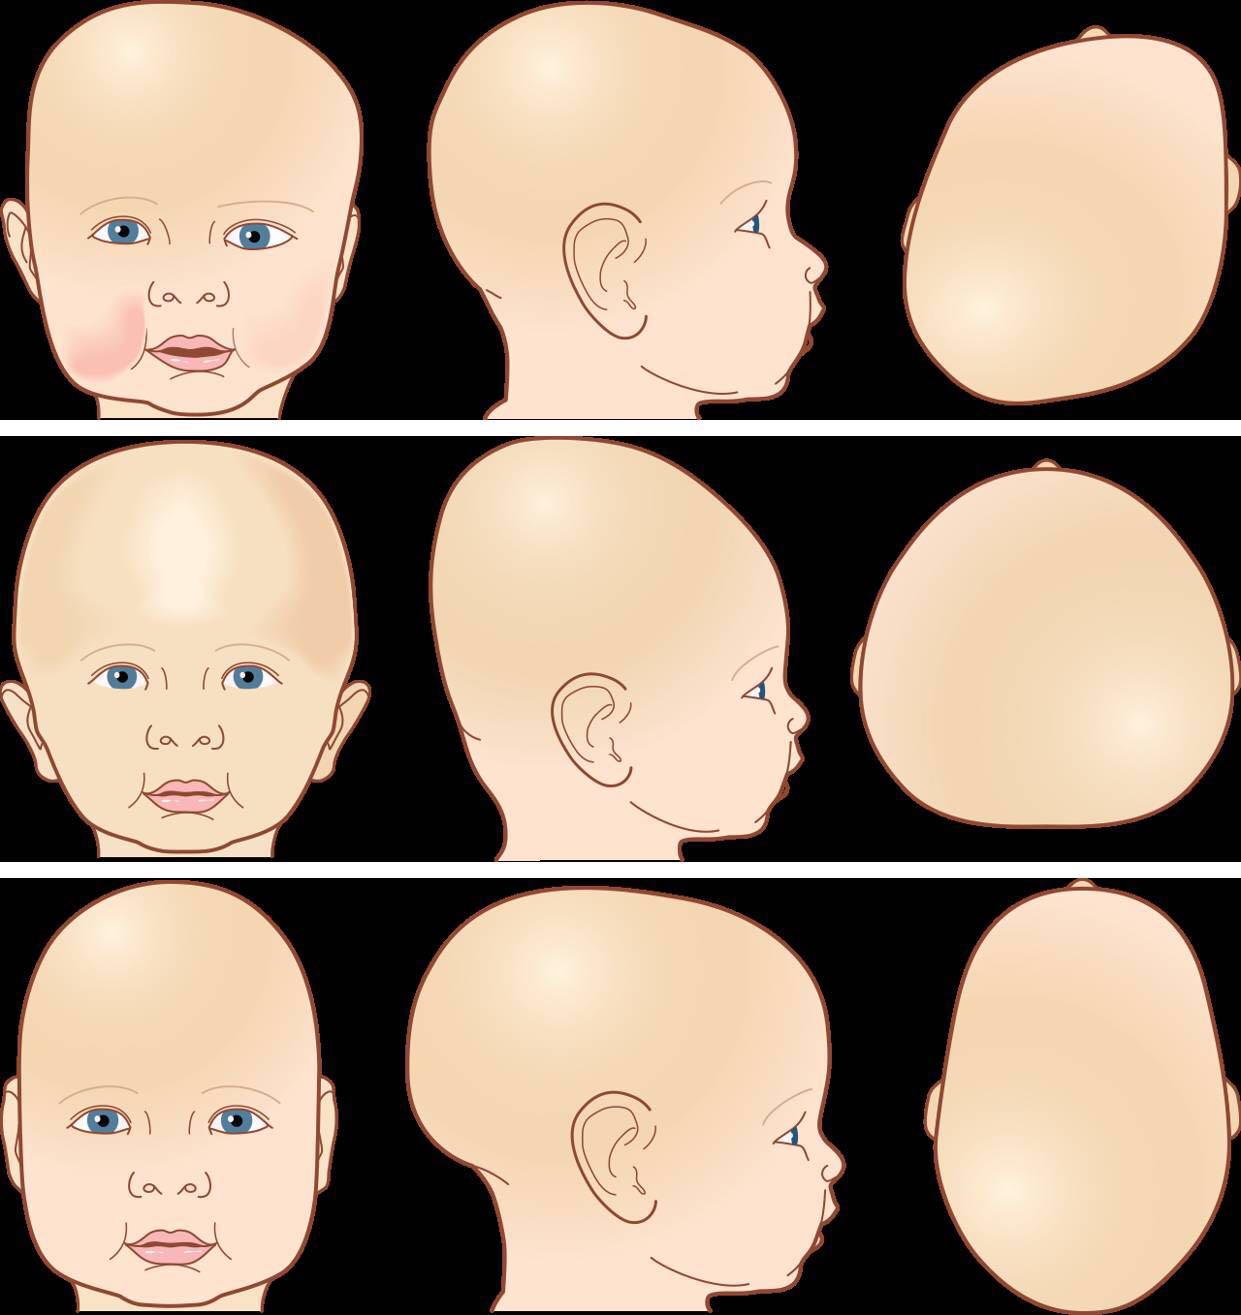 婴儿头颅异常的几种情况分析